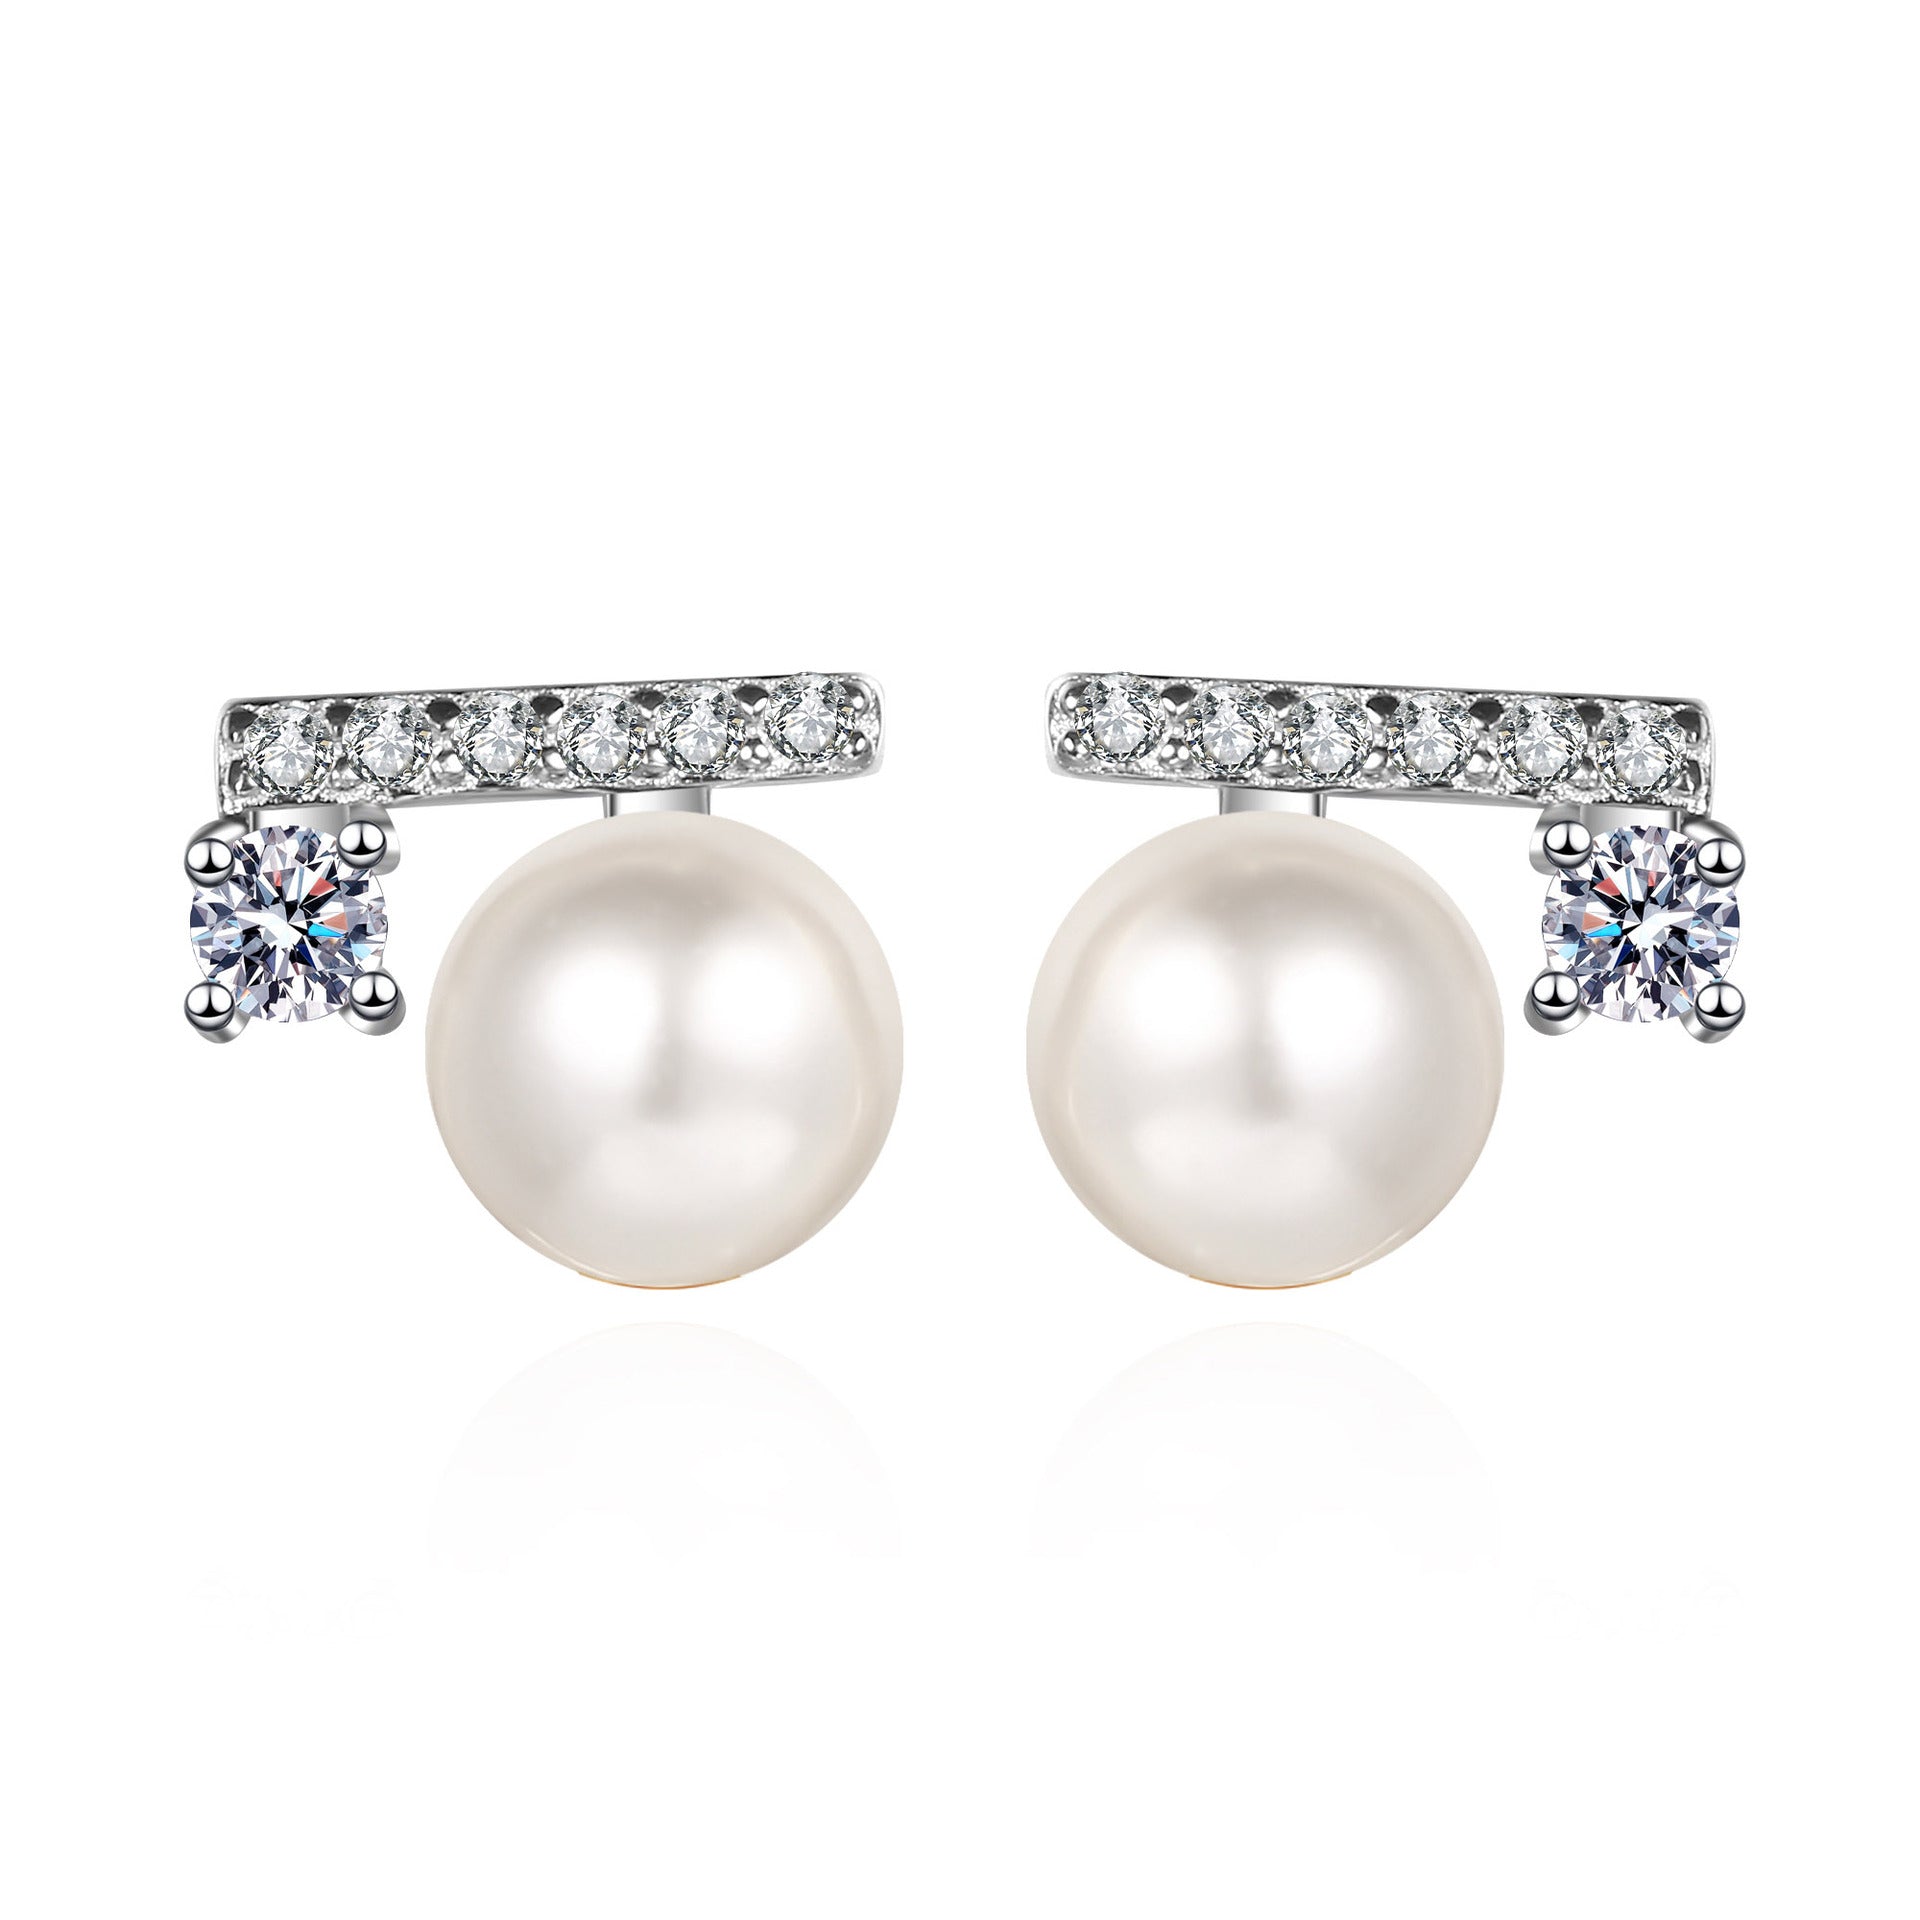 Pearl Earrings Studs - HERS